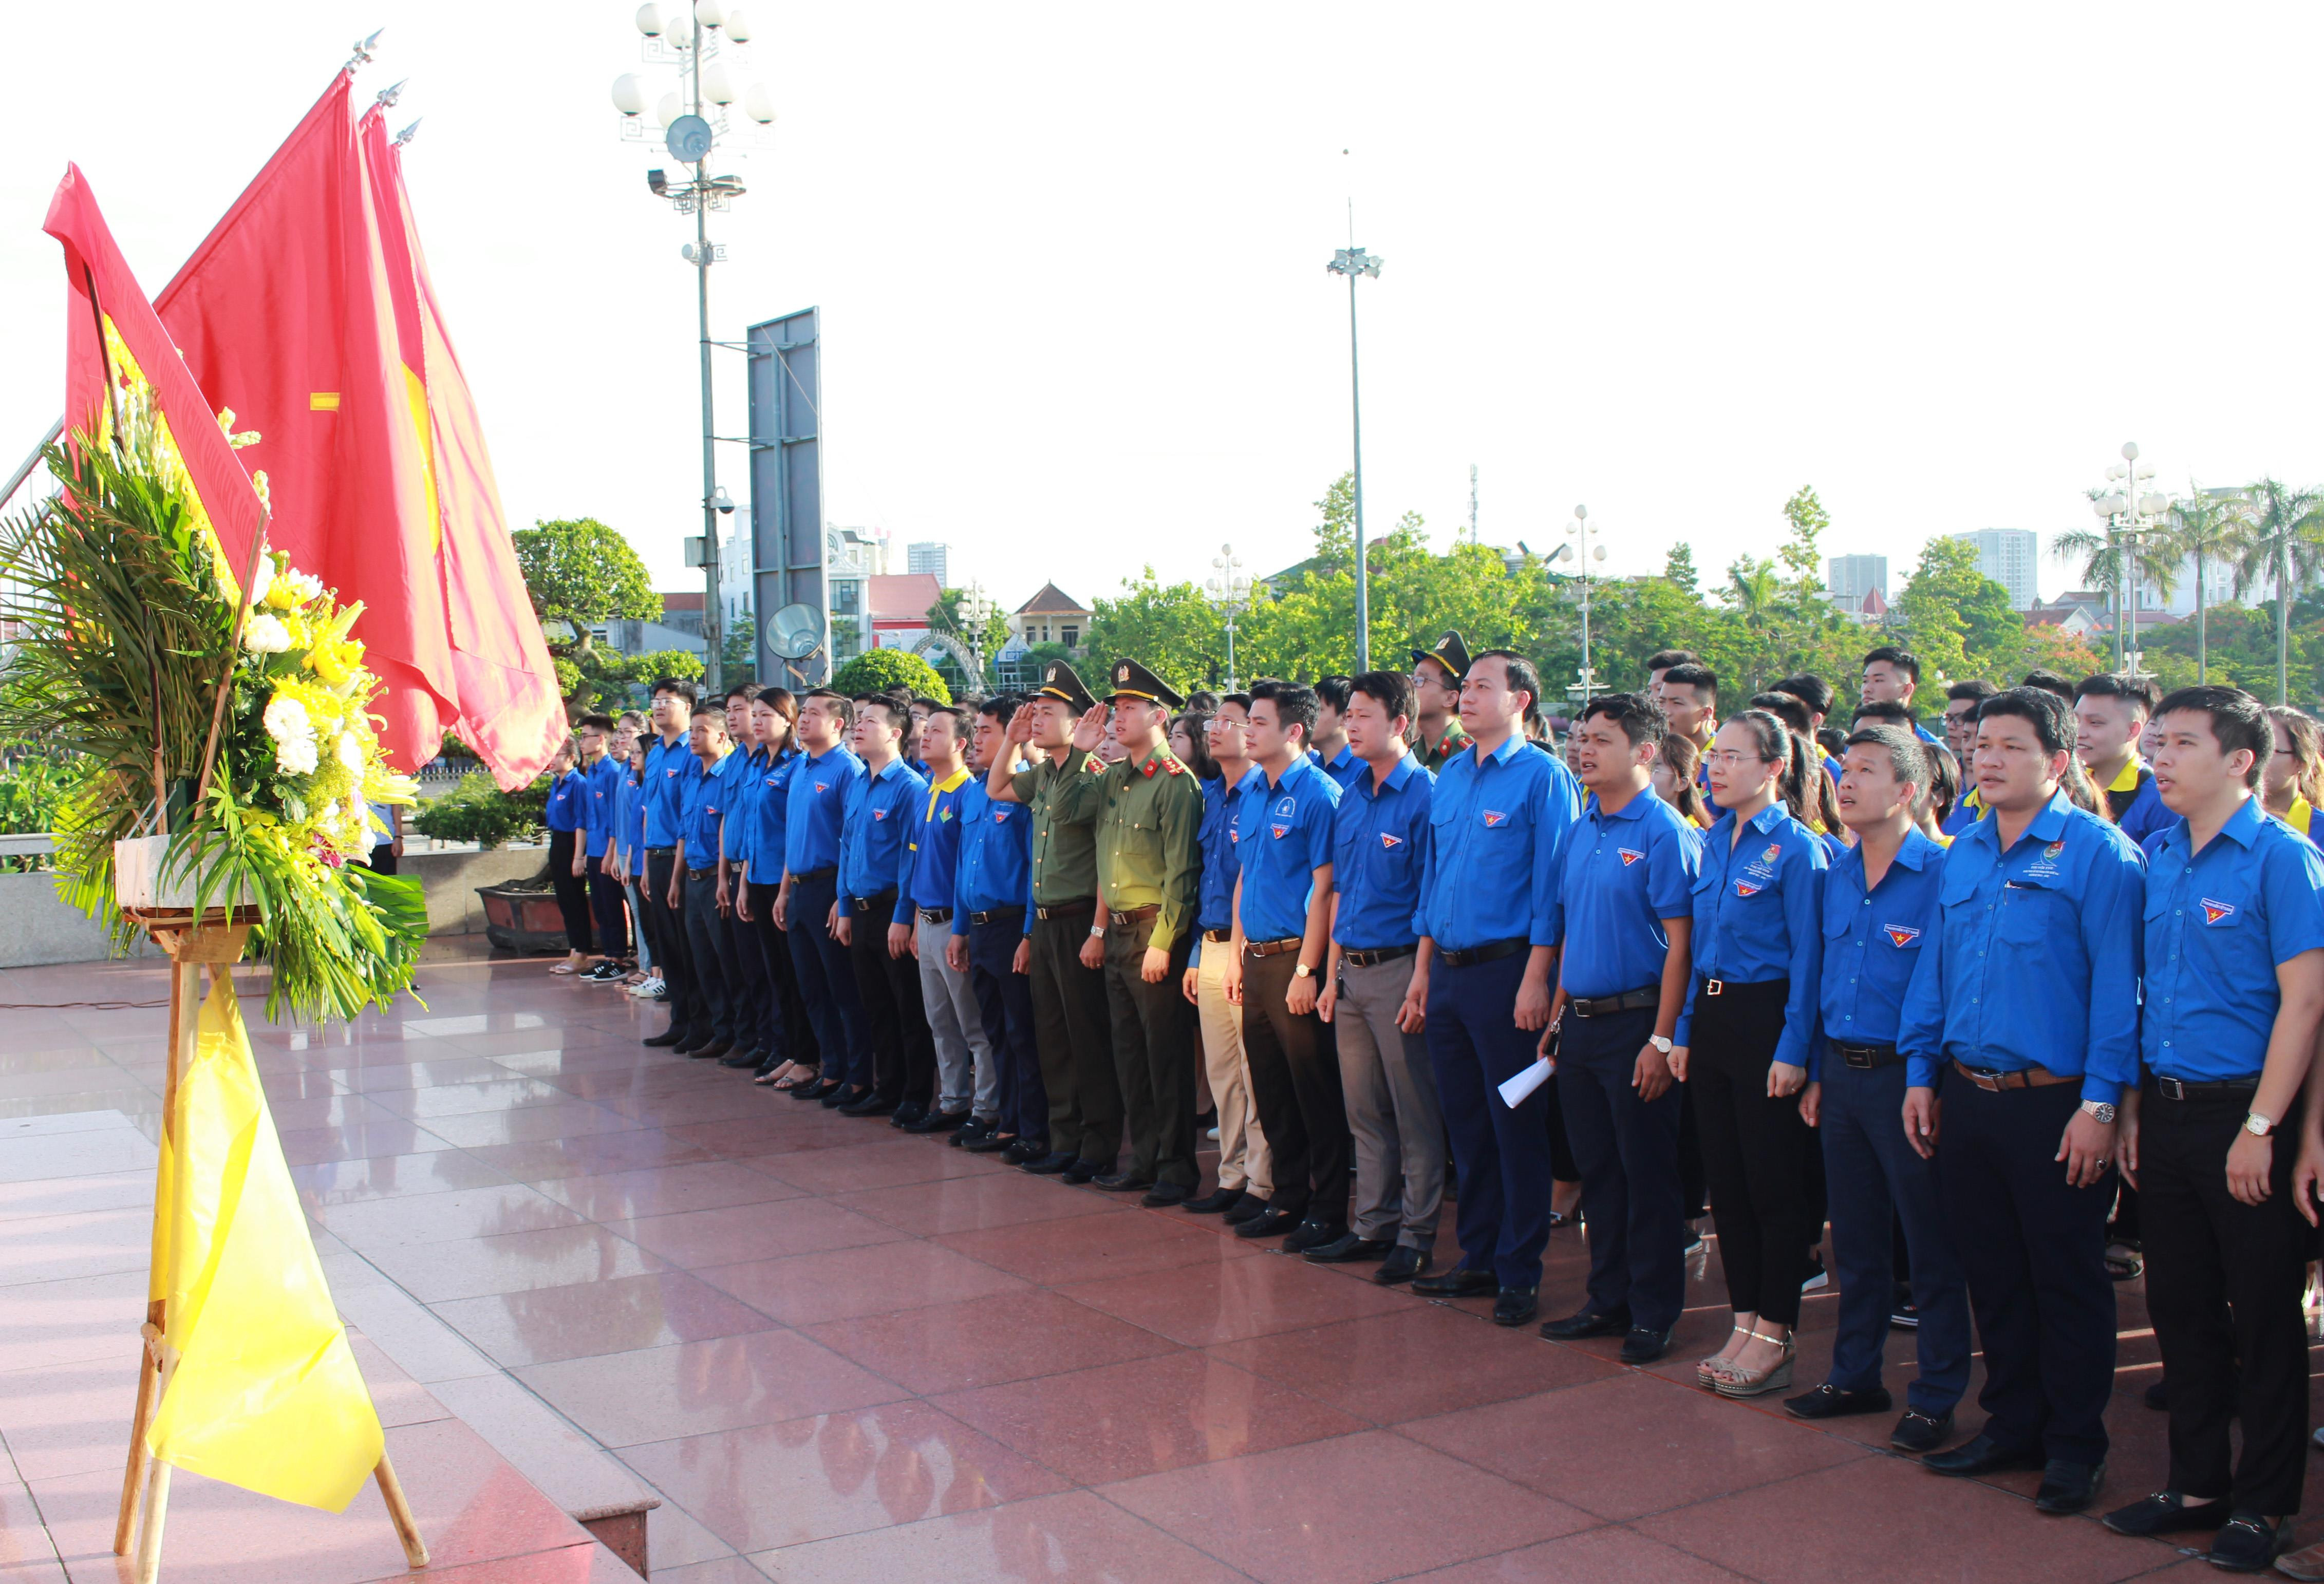 Tại Quảng trường Hồ Chí Minh, lãnh đạo Tỉnh đoàn Nghệ An và hơn 300 đoàn viên, thanh niên làm lễ chào cờ trước Tượng đài Chủ tịch Hồ Chí Minh. Ảnh: Phương Thúy